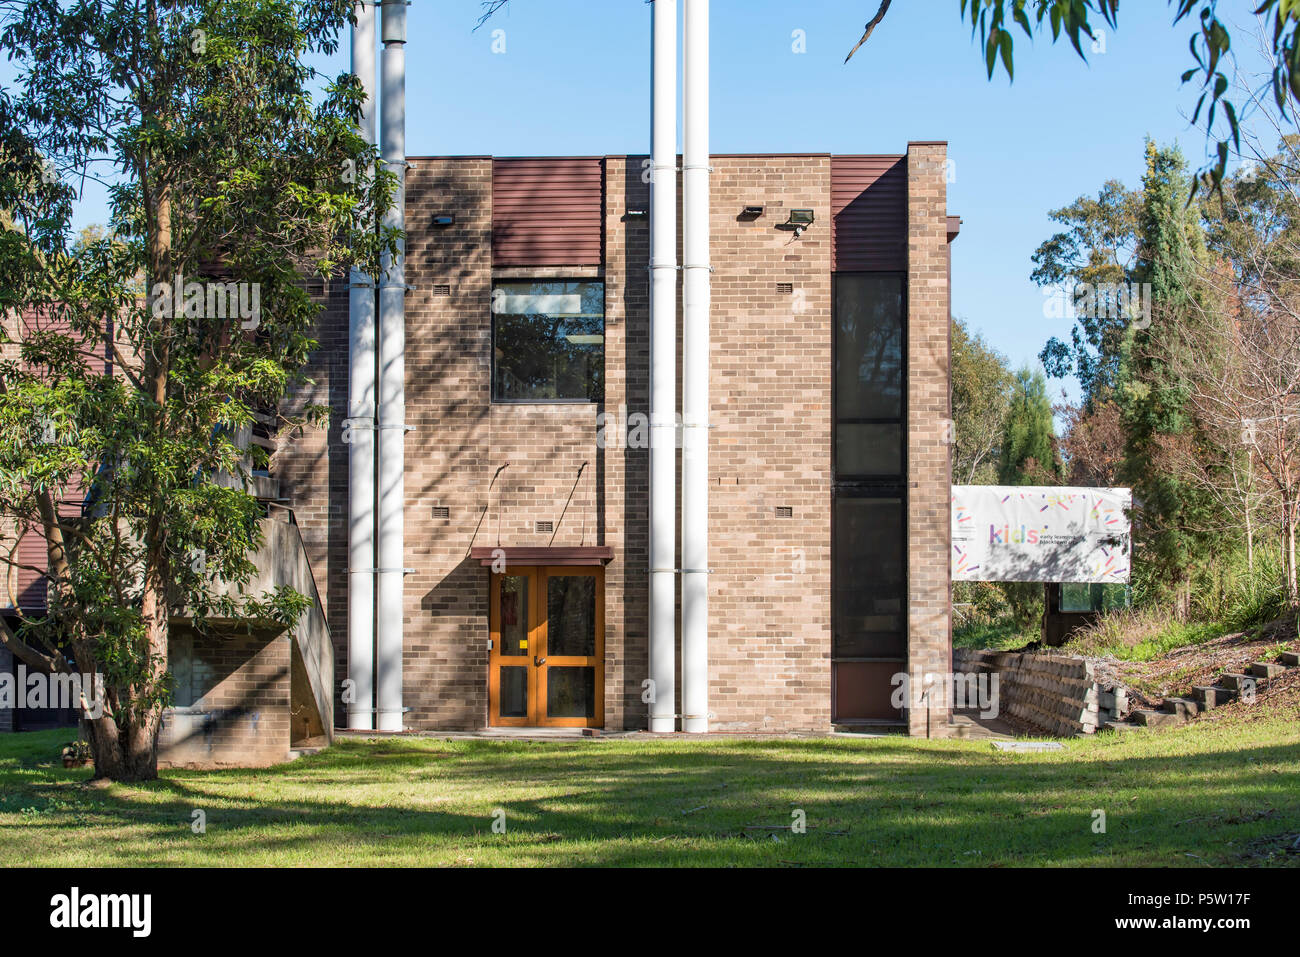 La fin des années 60 ou au début des années 70, la brique brutaliste moderniste immeuble de bureaux sur le patrimoine Grantham Estate dans sept Hill, Sydney Australie Banque D'Images